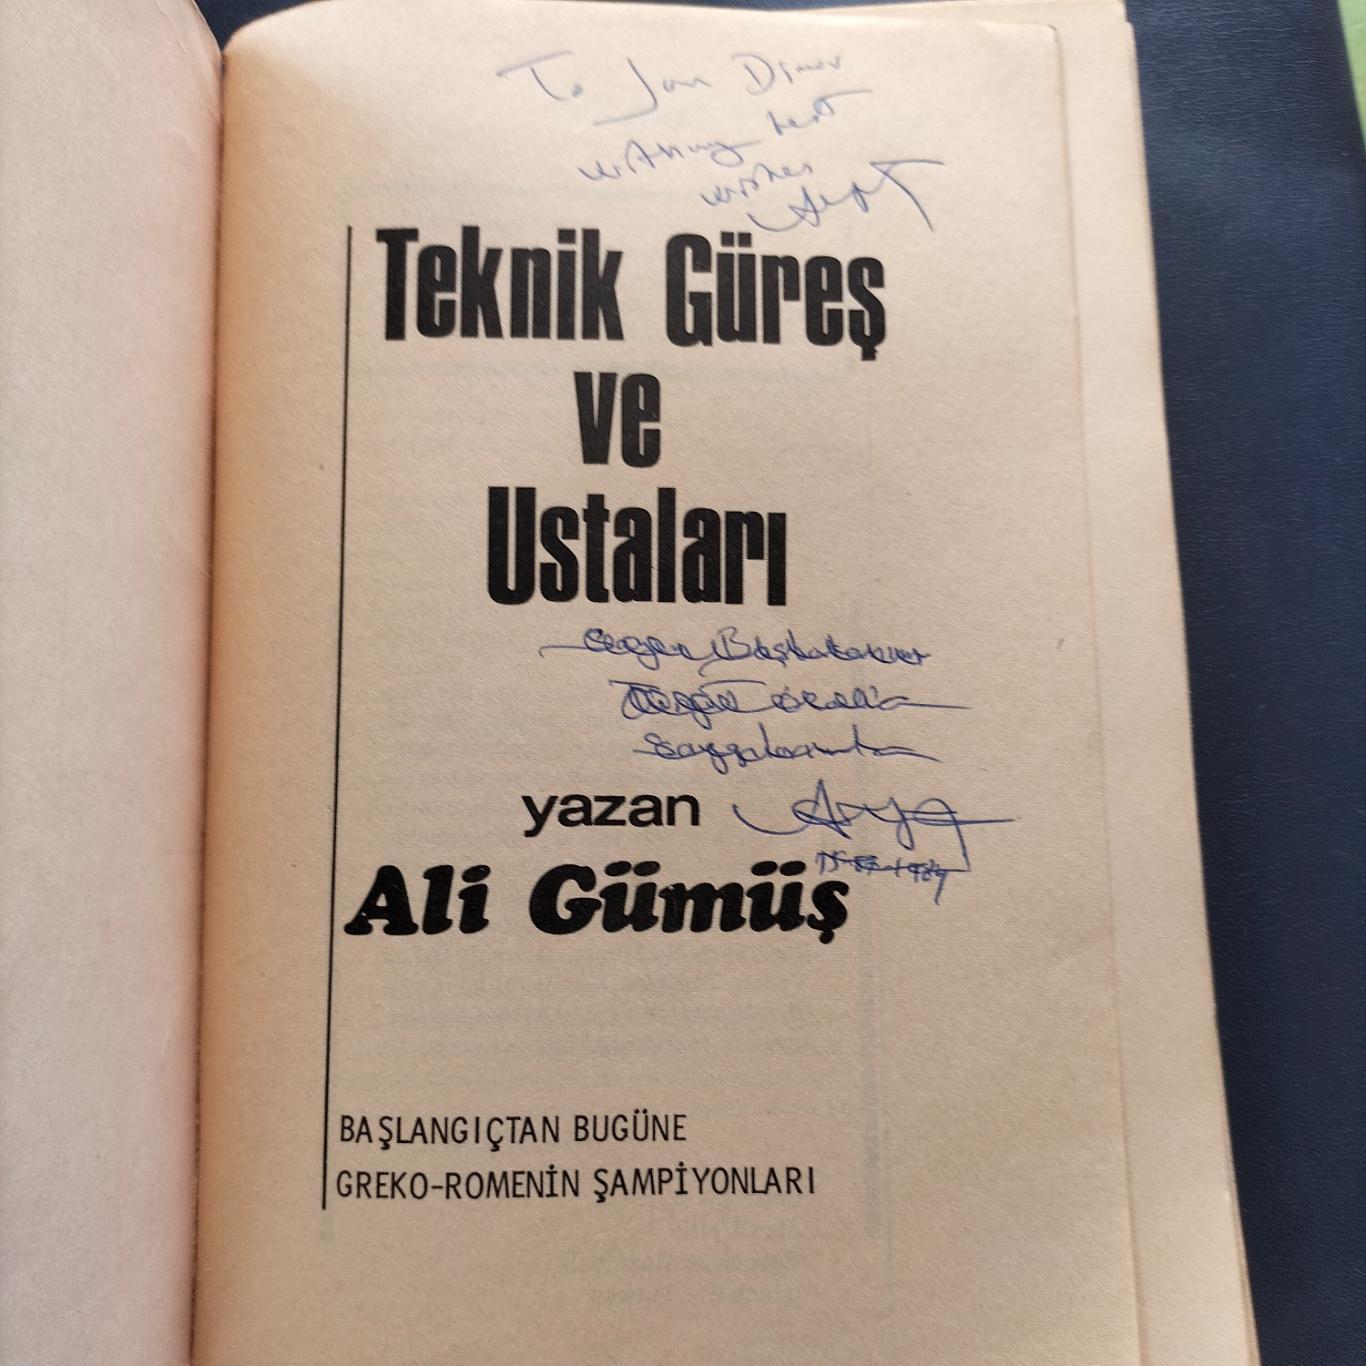 Ali Gumus книга 1